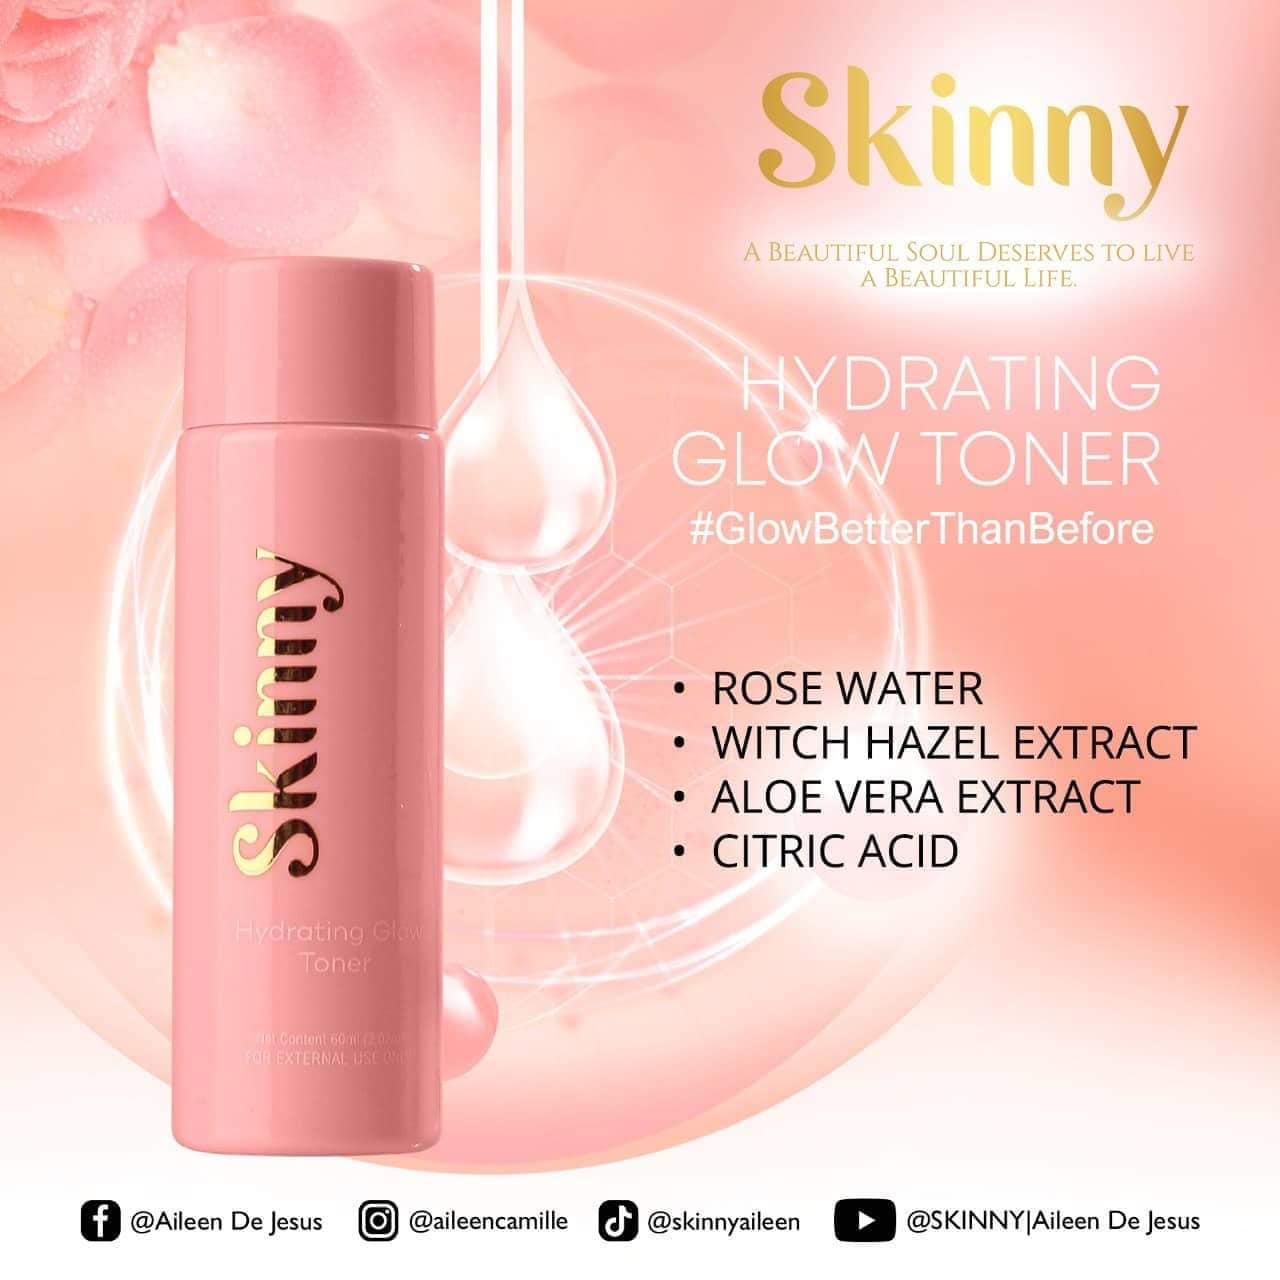 Skinny - Fountain of Glow Kit